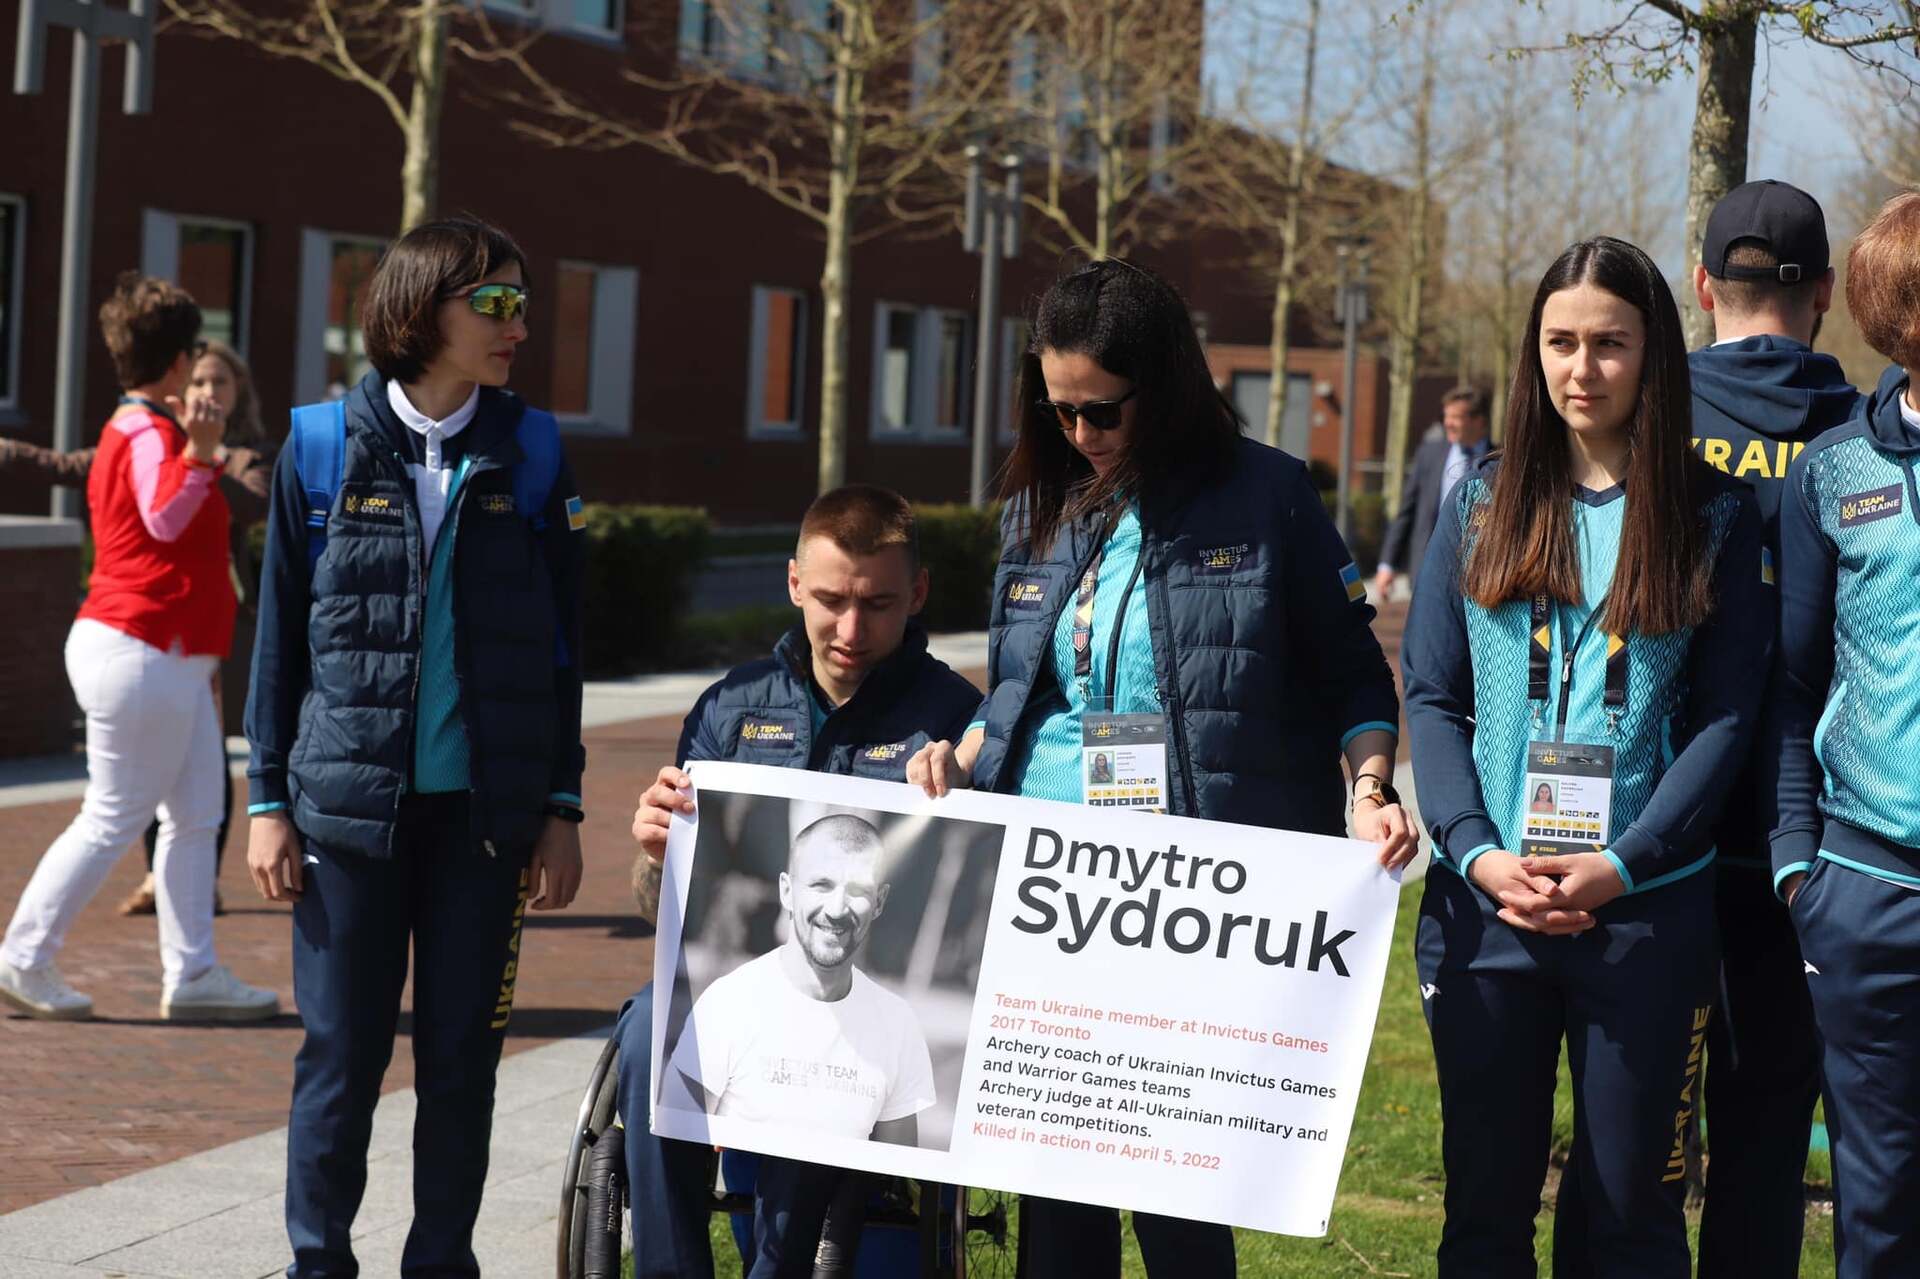 Акція на підтримку пам'яті про Дмитра Сидорука на Іграх Нескорених 2022.